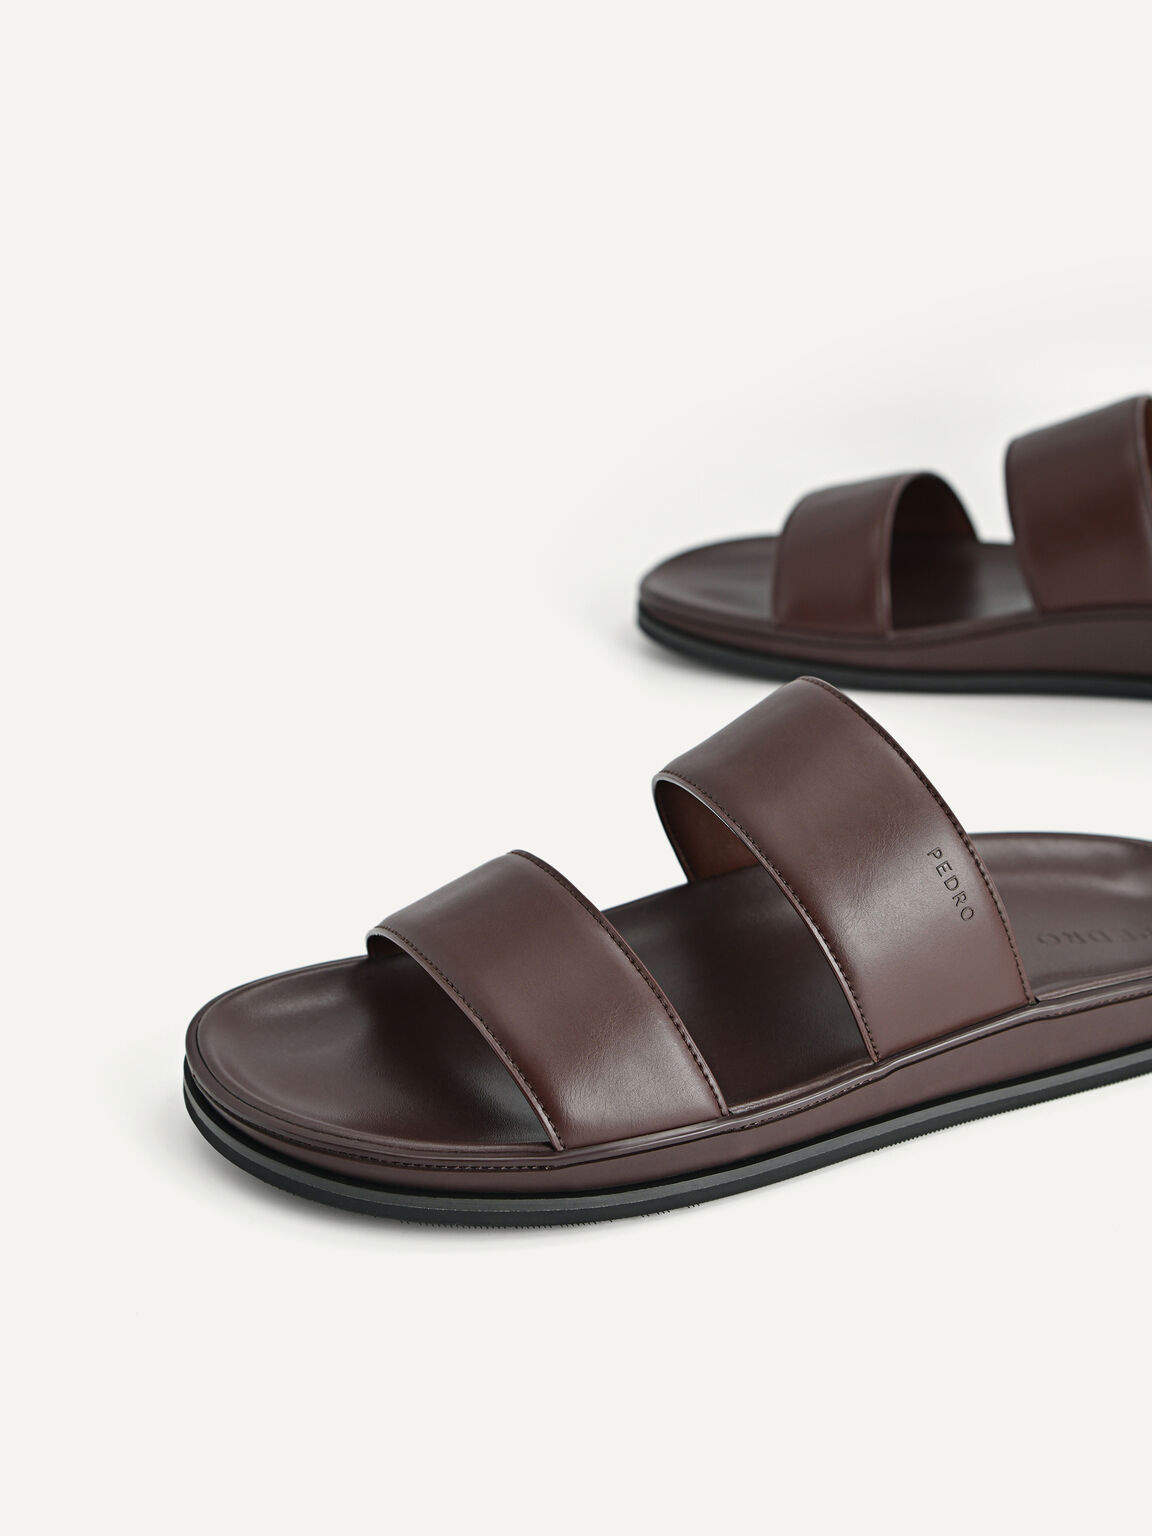 Monochrome Double Strap Sandals, Dark Brown